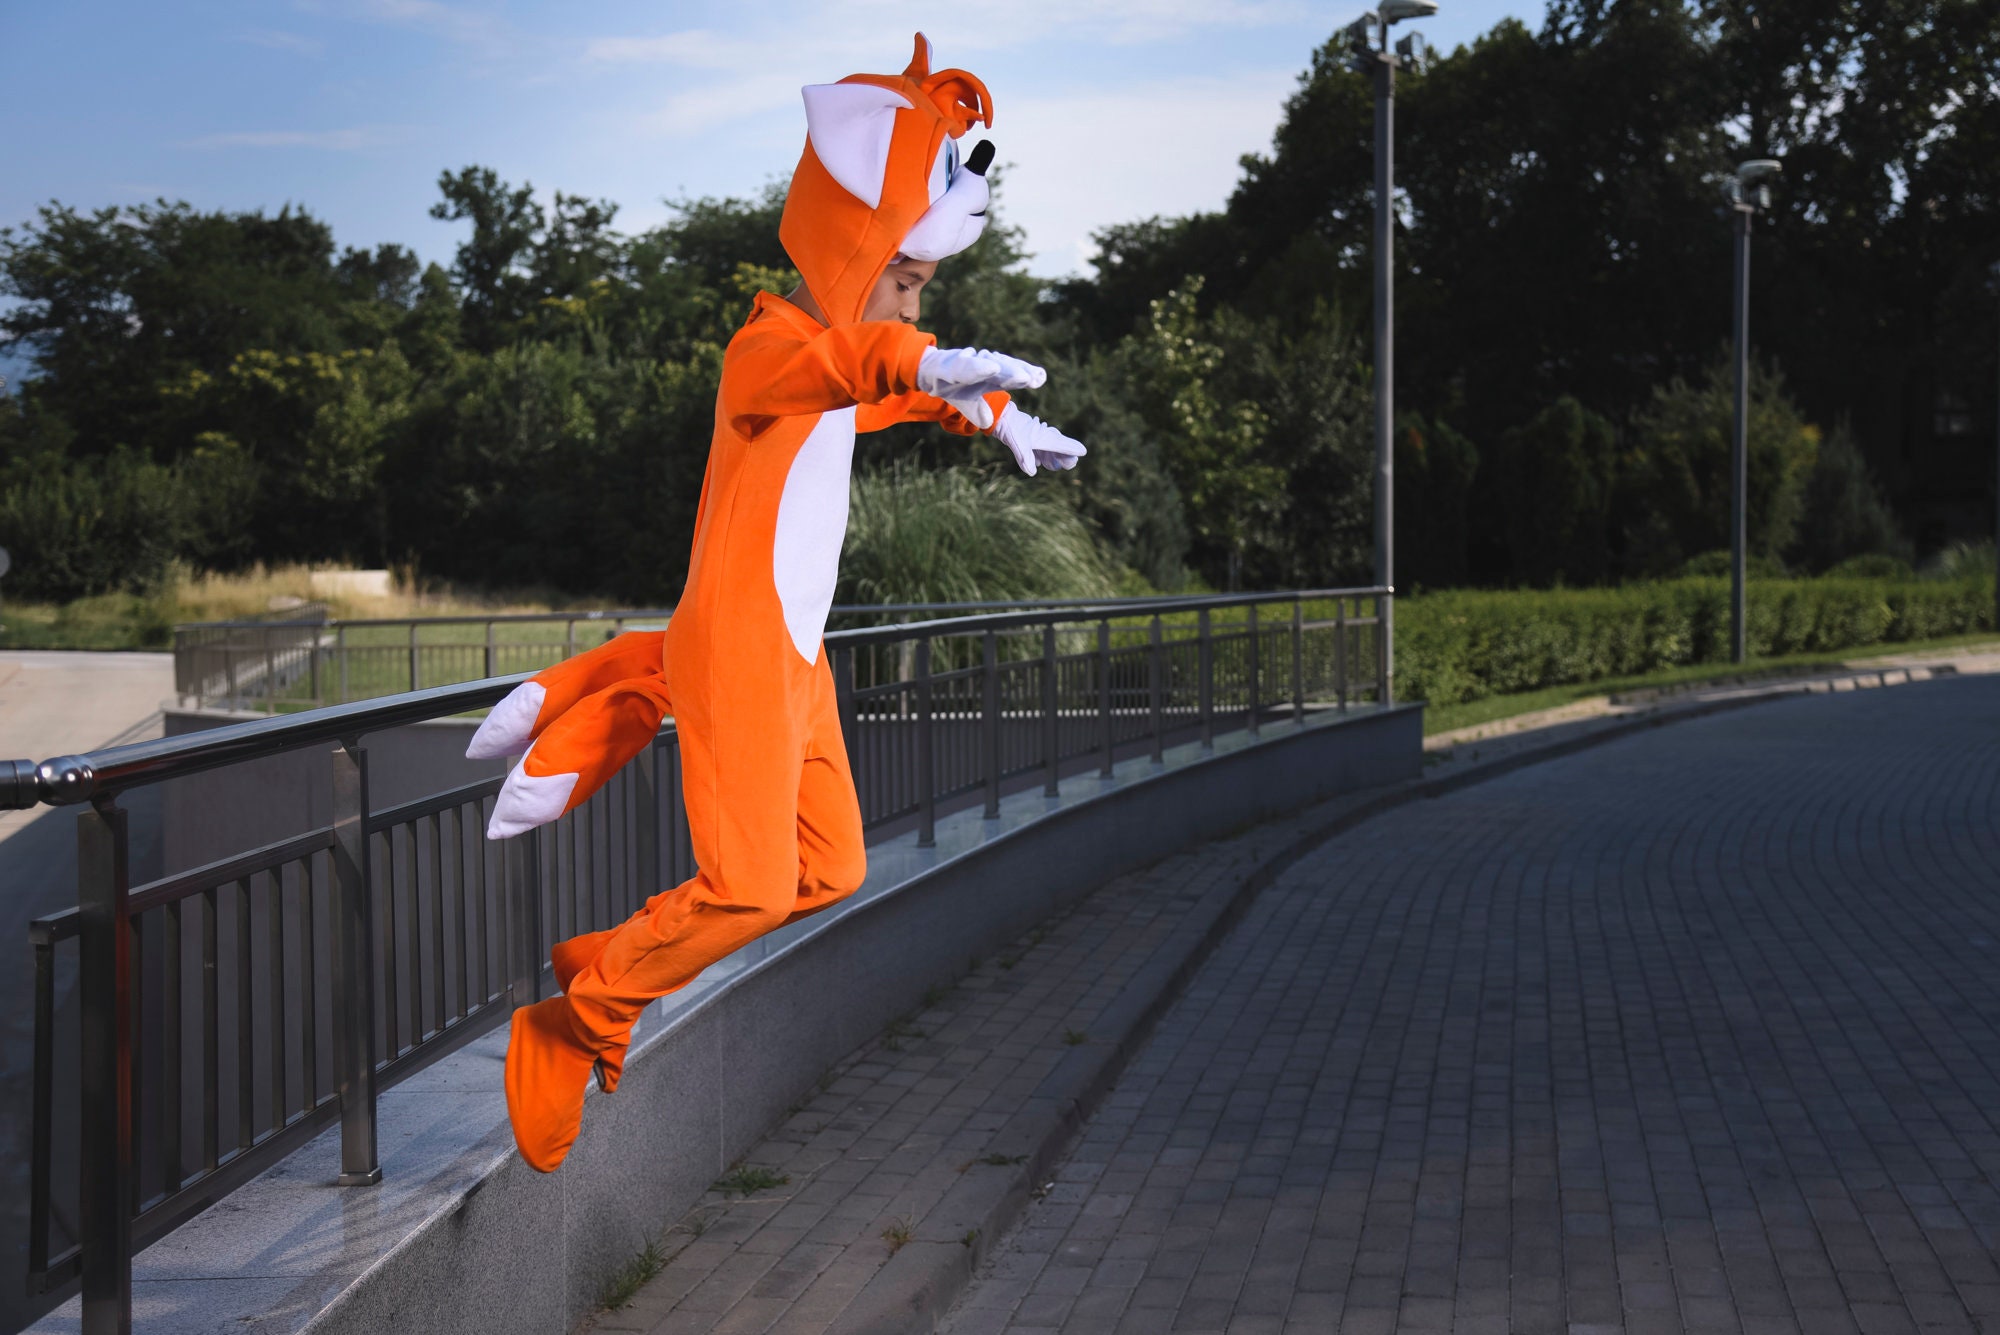 Tails Orange Sonic Costume, Costume per bambini, Costume per